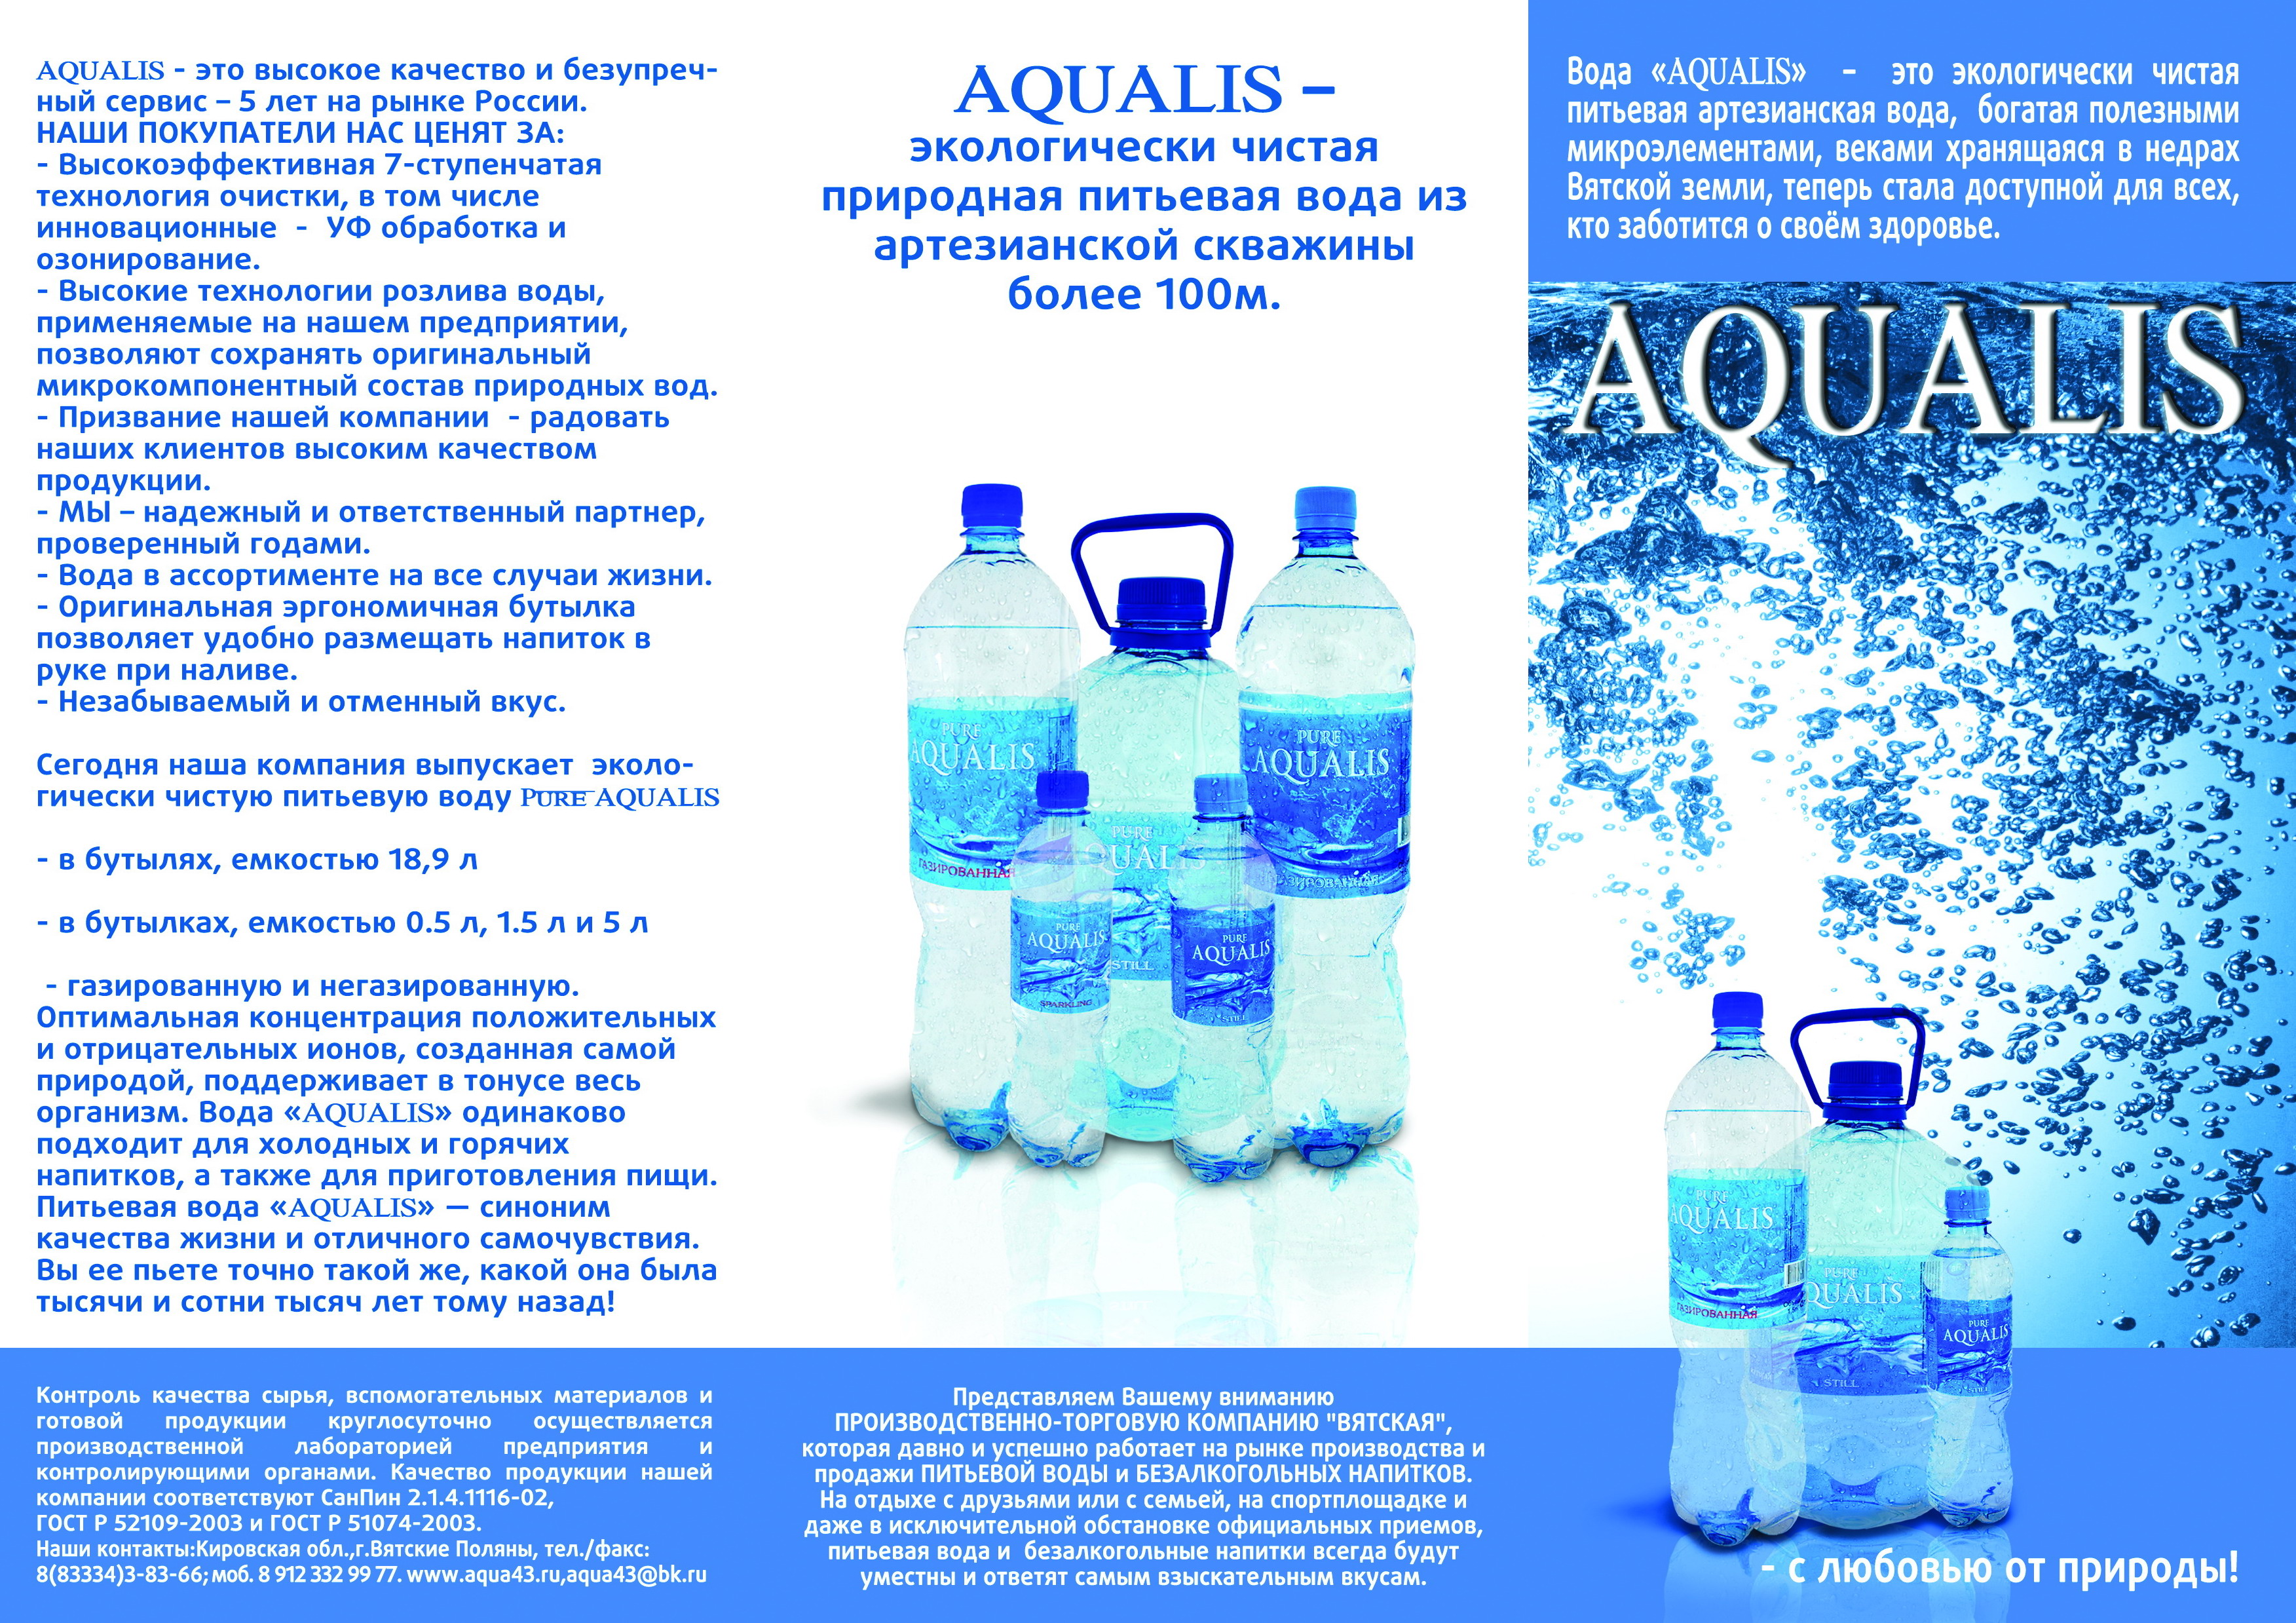 Питьевая вода статья. Вода питьевая артезианская. Артезианская вода реклама. Чистая артезианская вода. Вода артезианская продукция.